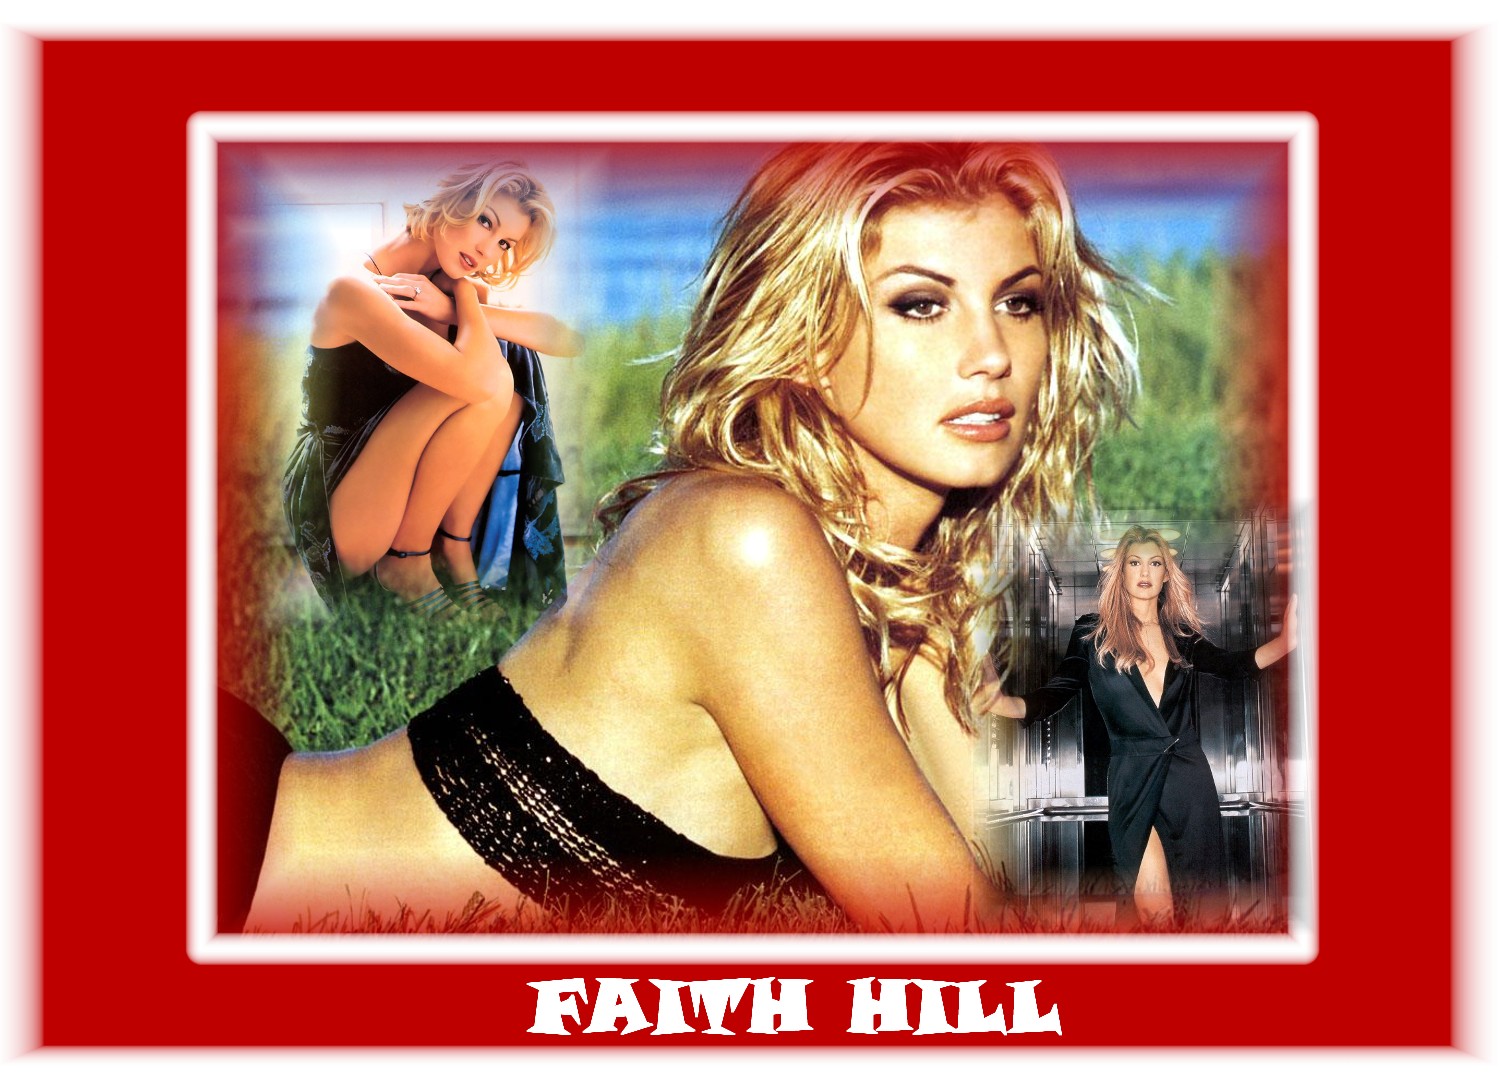 Faith hill 17